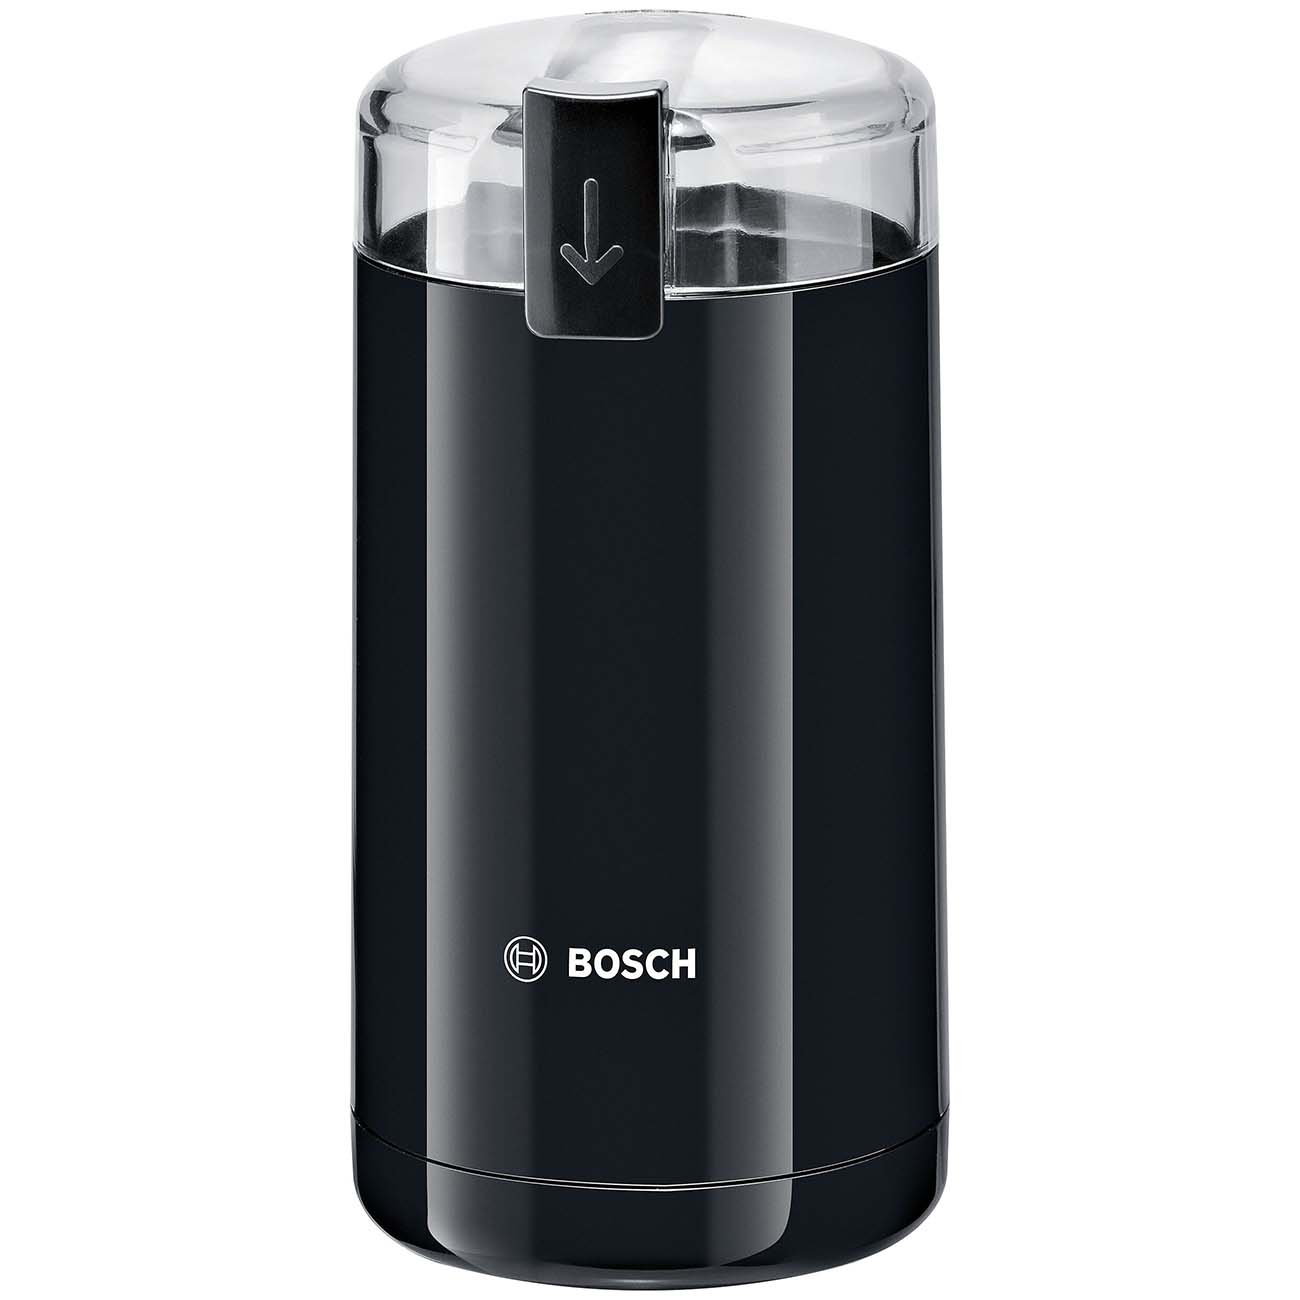 Ремонт кофемолки Bosch MKM6003. Заклинила. (Как самому разобрать и почистить)